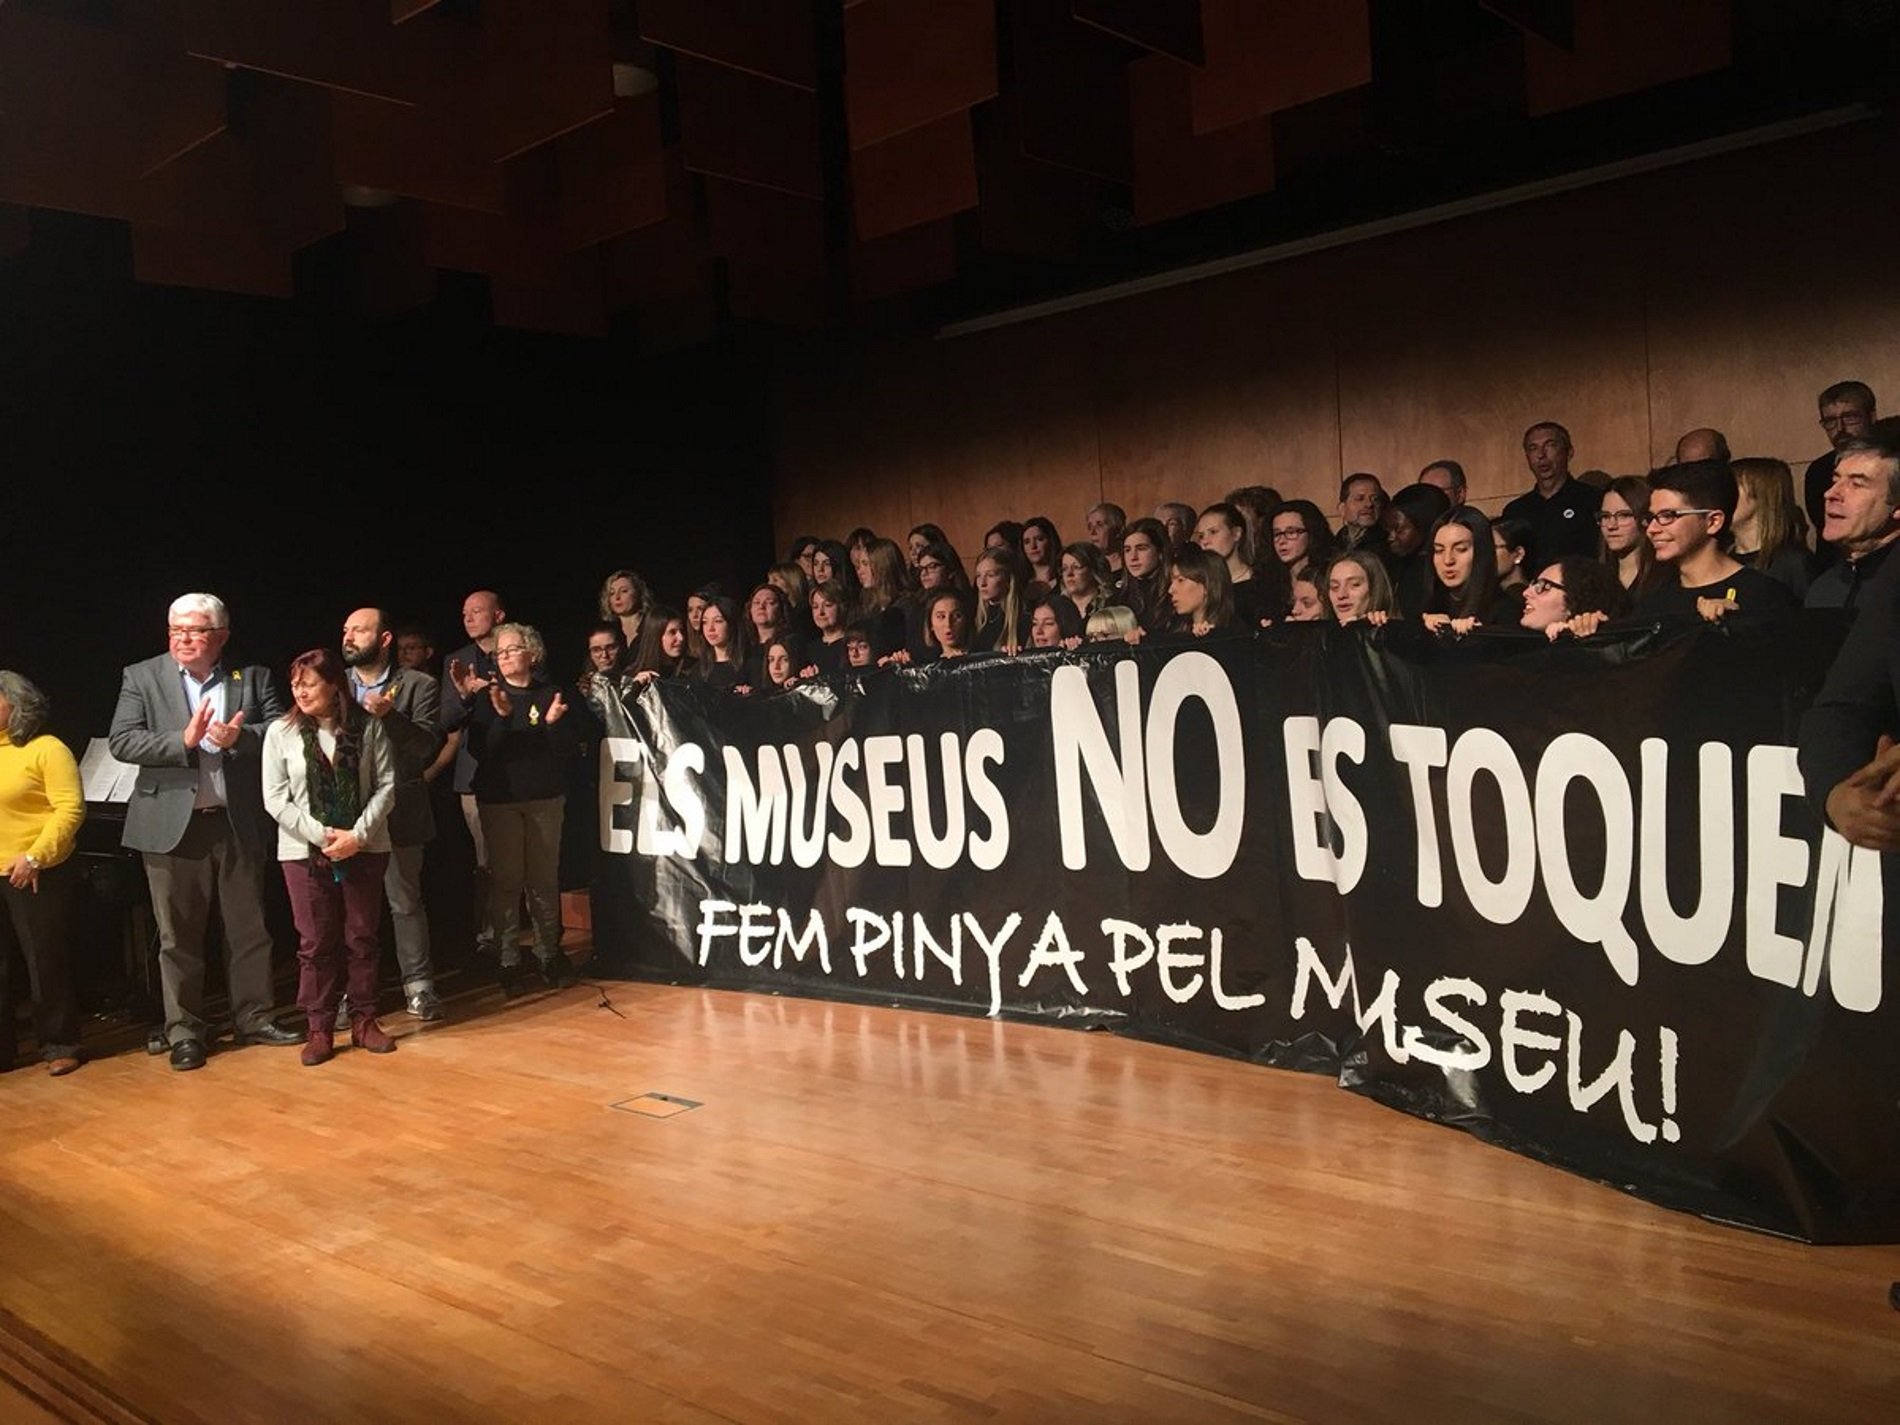 Els guàrdies civils, en arribar a Lleida: "Venimos a ocupar el museo"